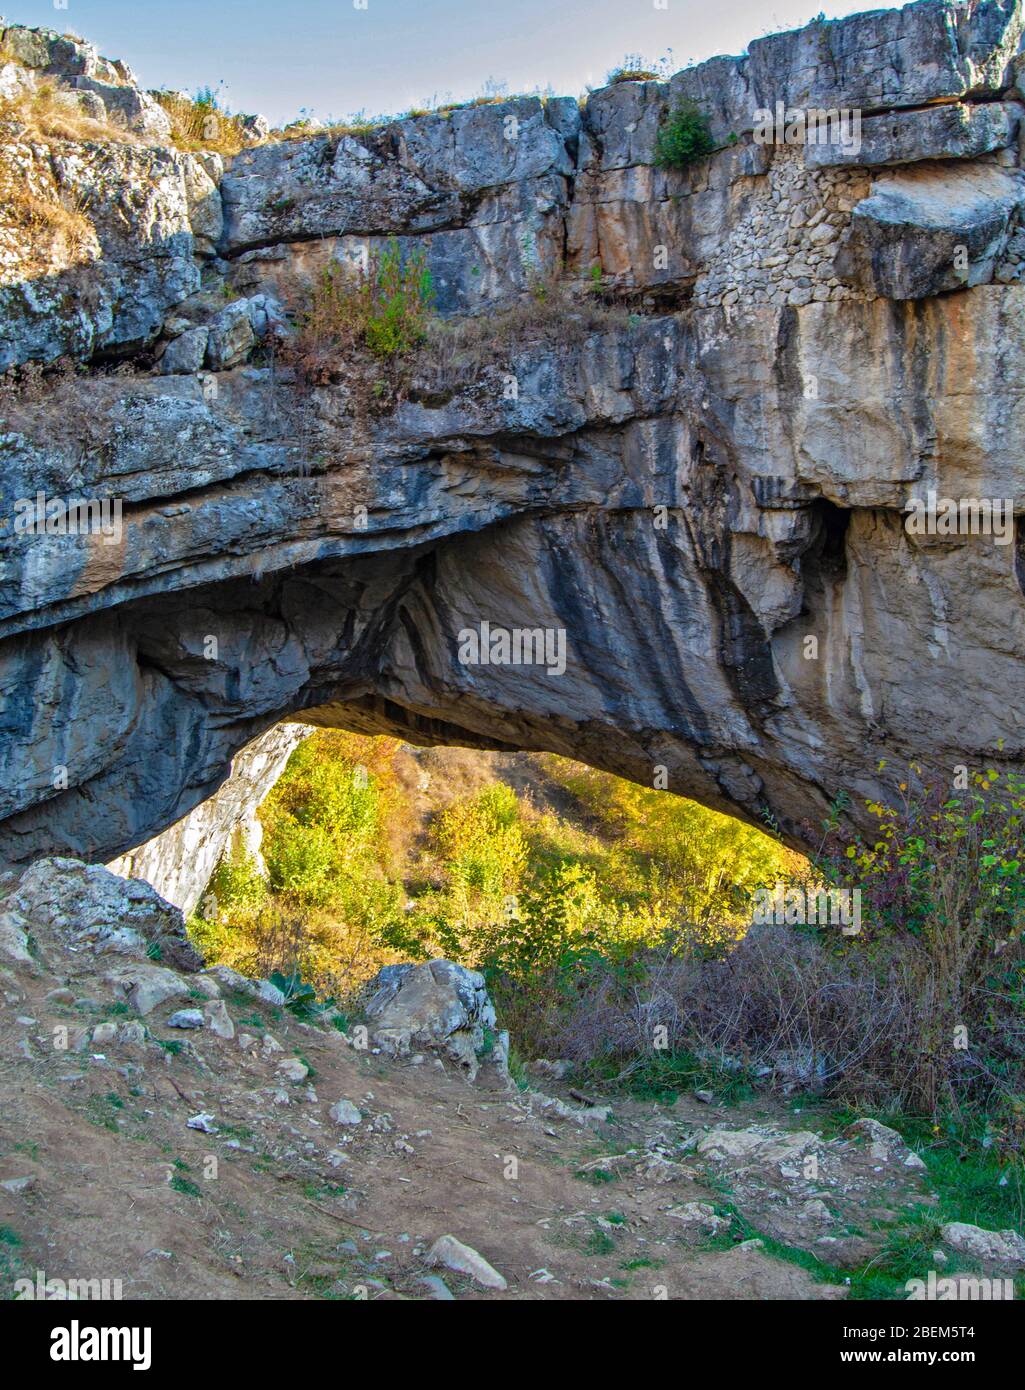 Paysage avec pont de roche naturel formé par une grotte effondrée, connue sous le nom de Pont de Dieu ou 'Podul lui Dumnezeu' à Ponoarele, Mehedinti, Roumanie Banque D'Images